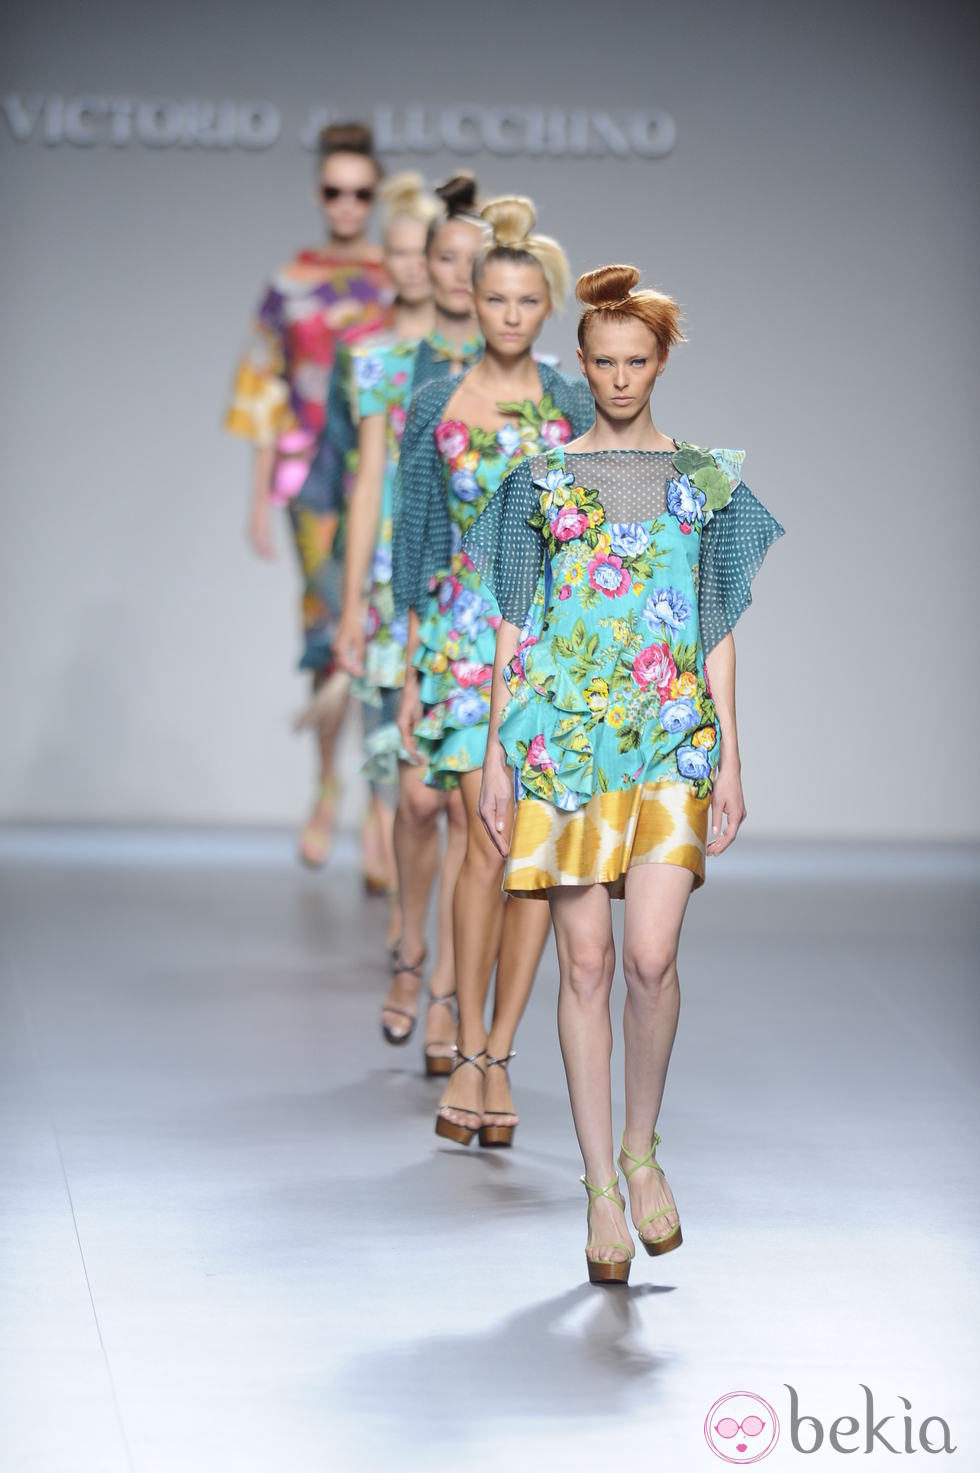 Modelos desfilando la colección primavera-verano 2013 de Victorio&Lucchino en Fashion Week Madrid